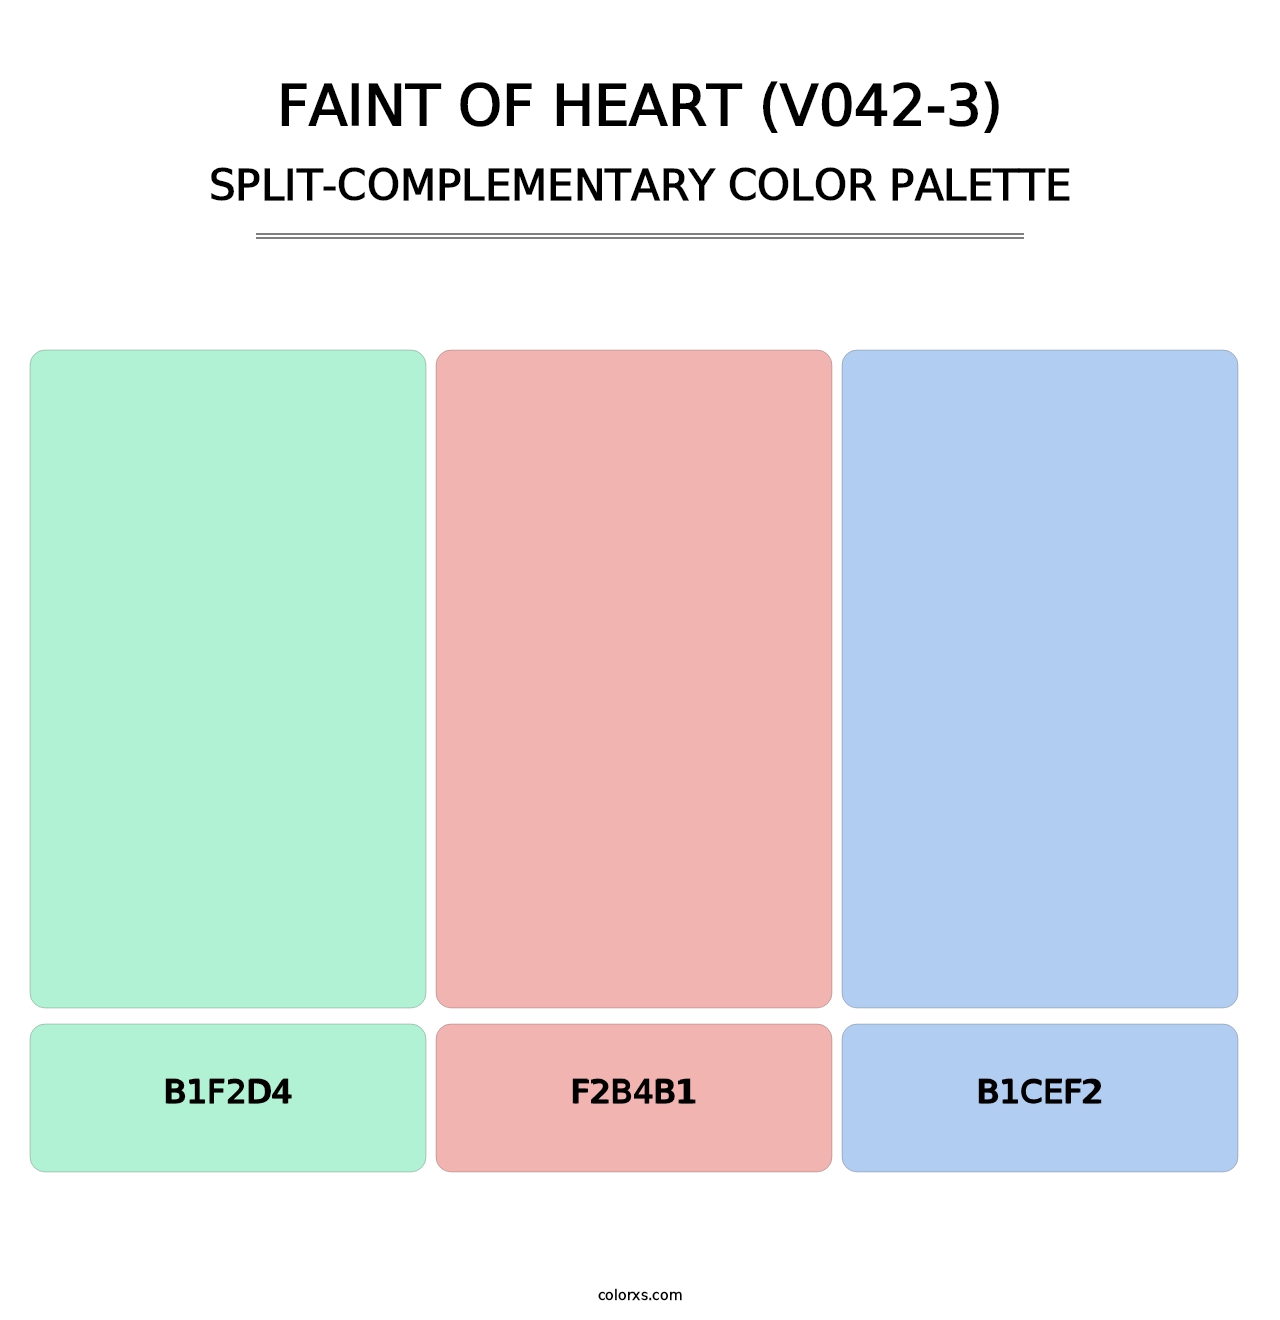 Faint of Heart (V042-3) - Split-Complementary Color Palette